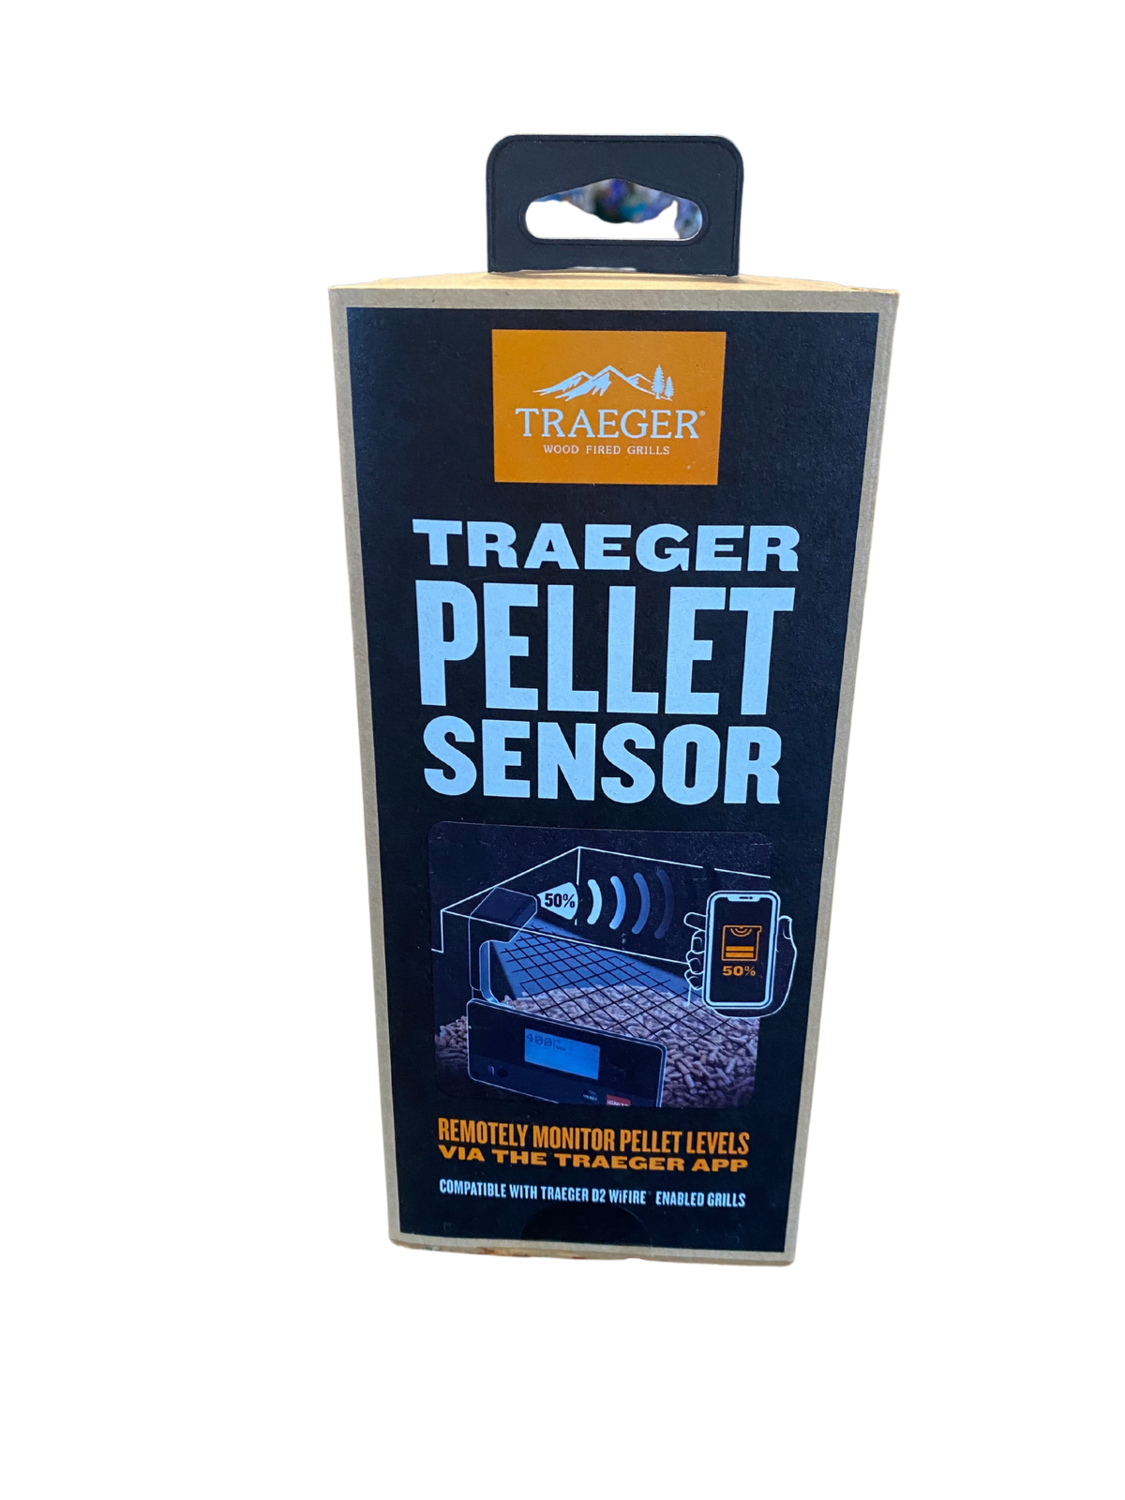 TG Pellet Sensor